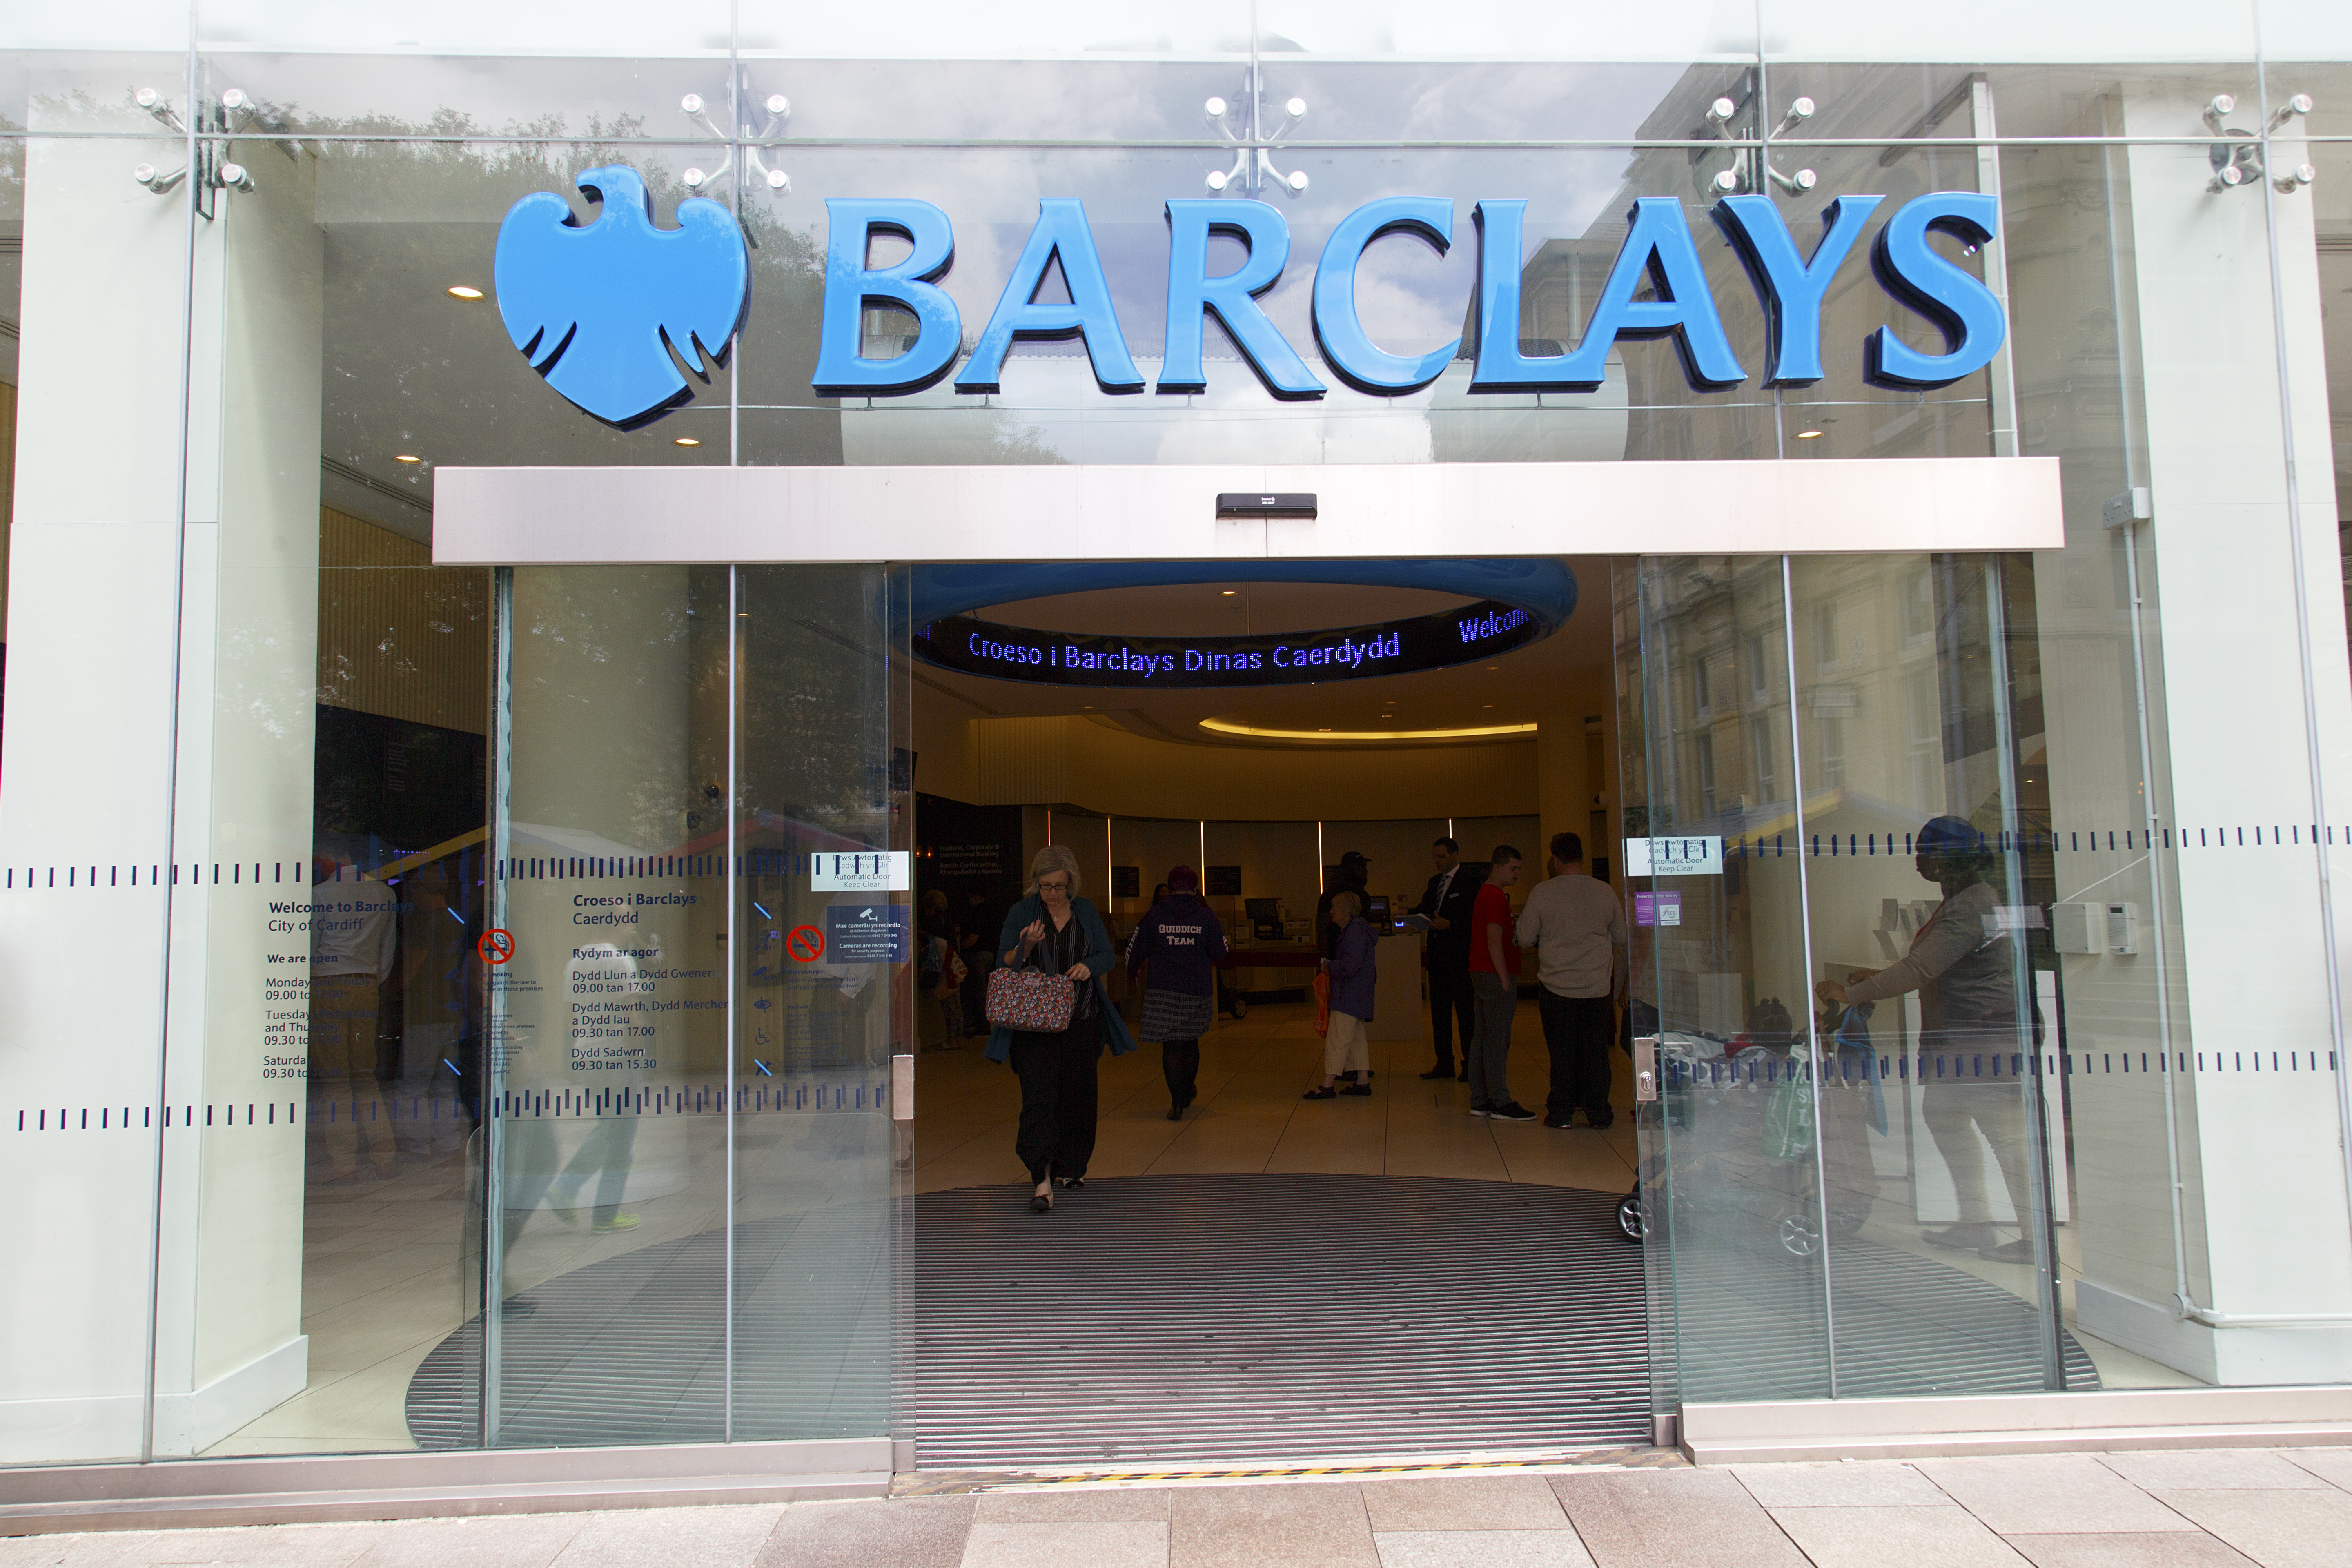 Barclays s'apprête à fermer définitivement quatre de ses agences cette semaine